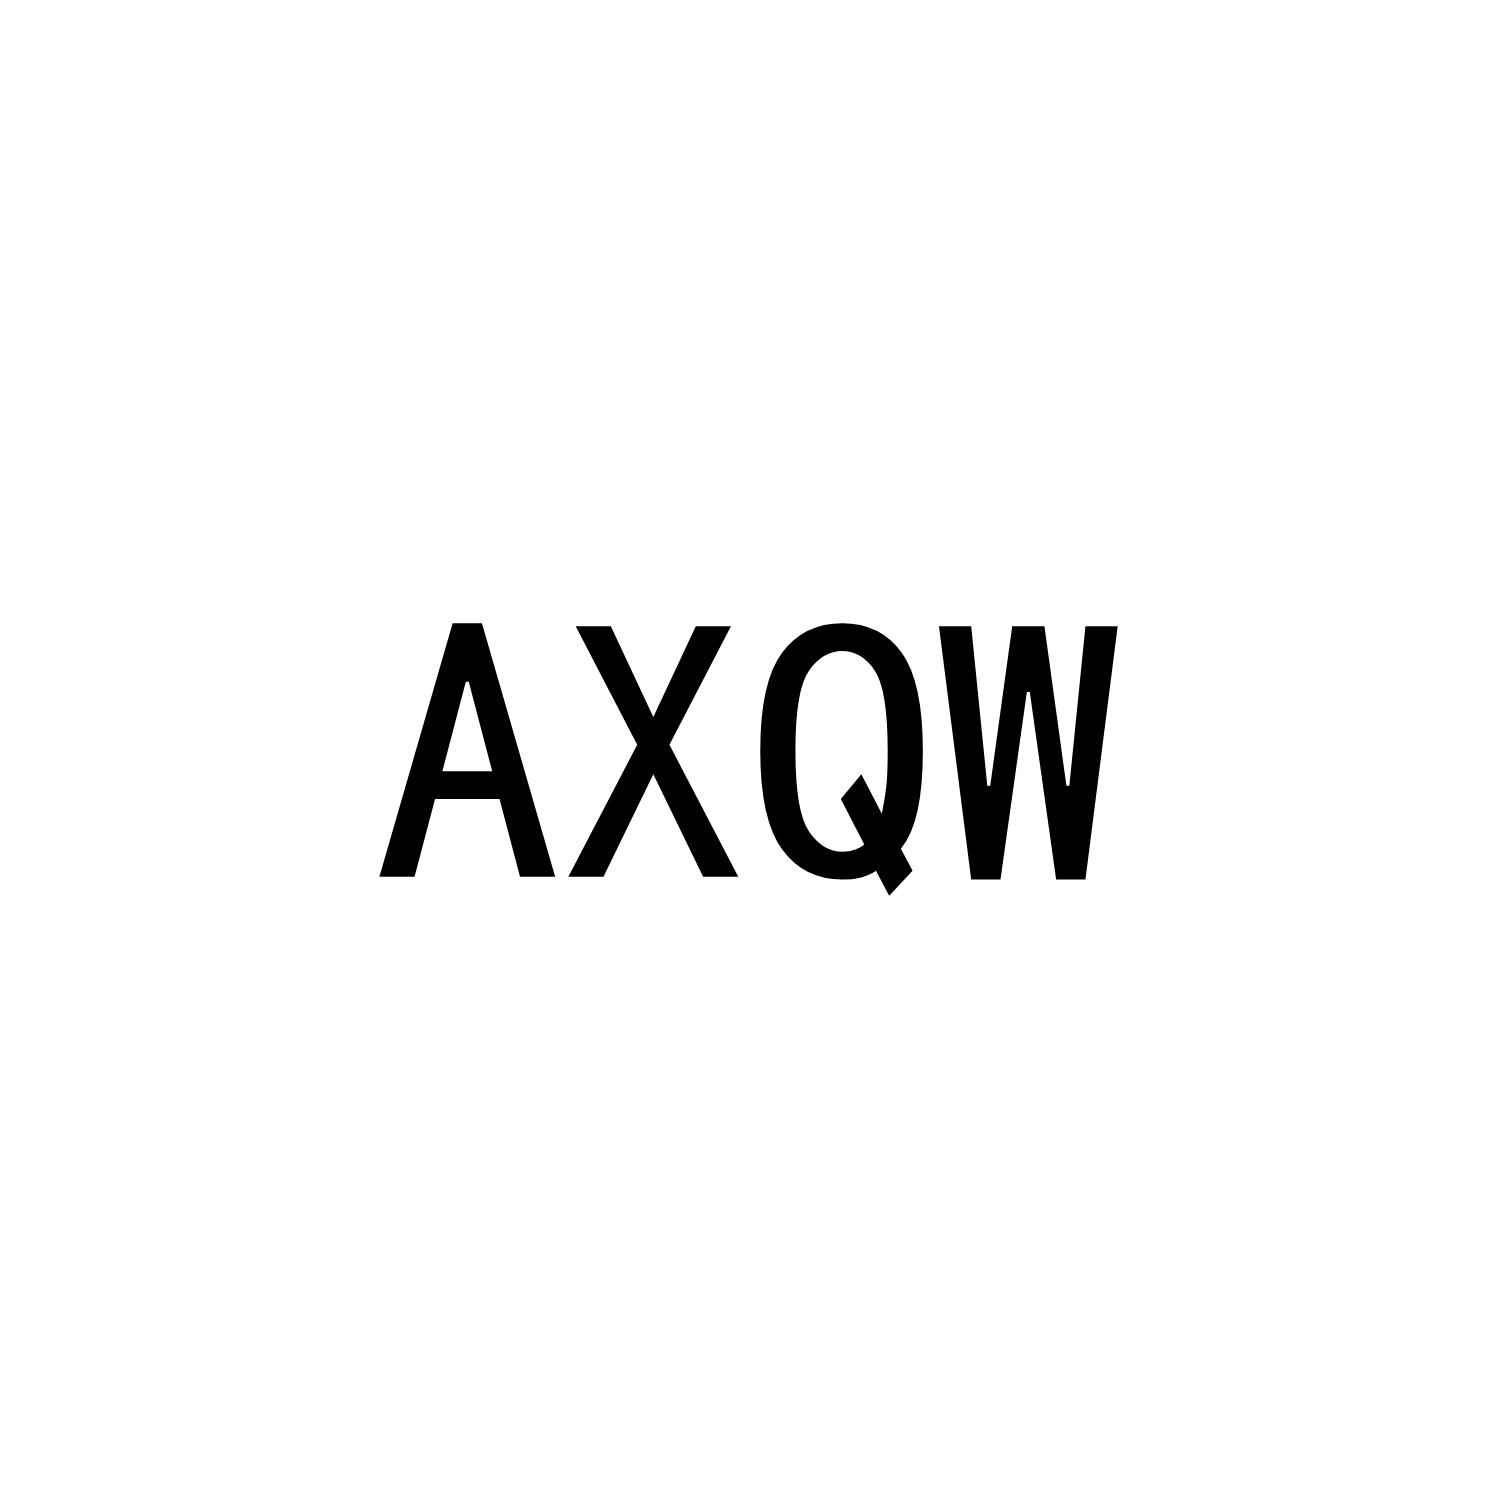 AXQW